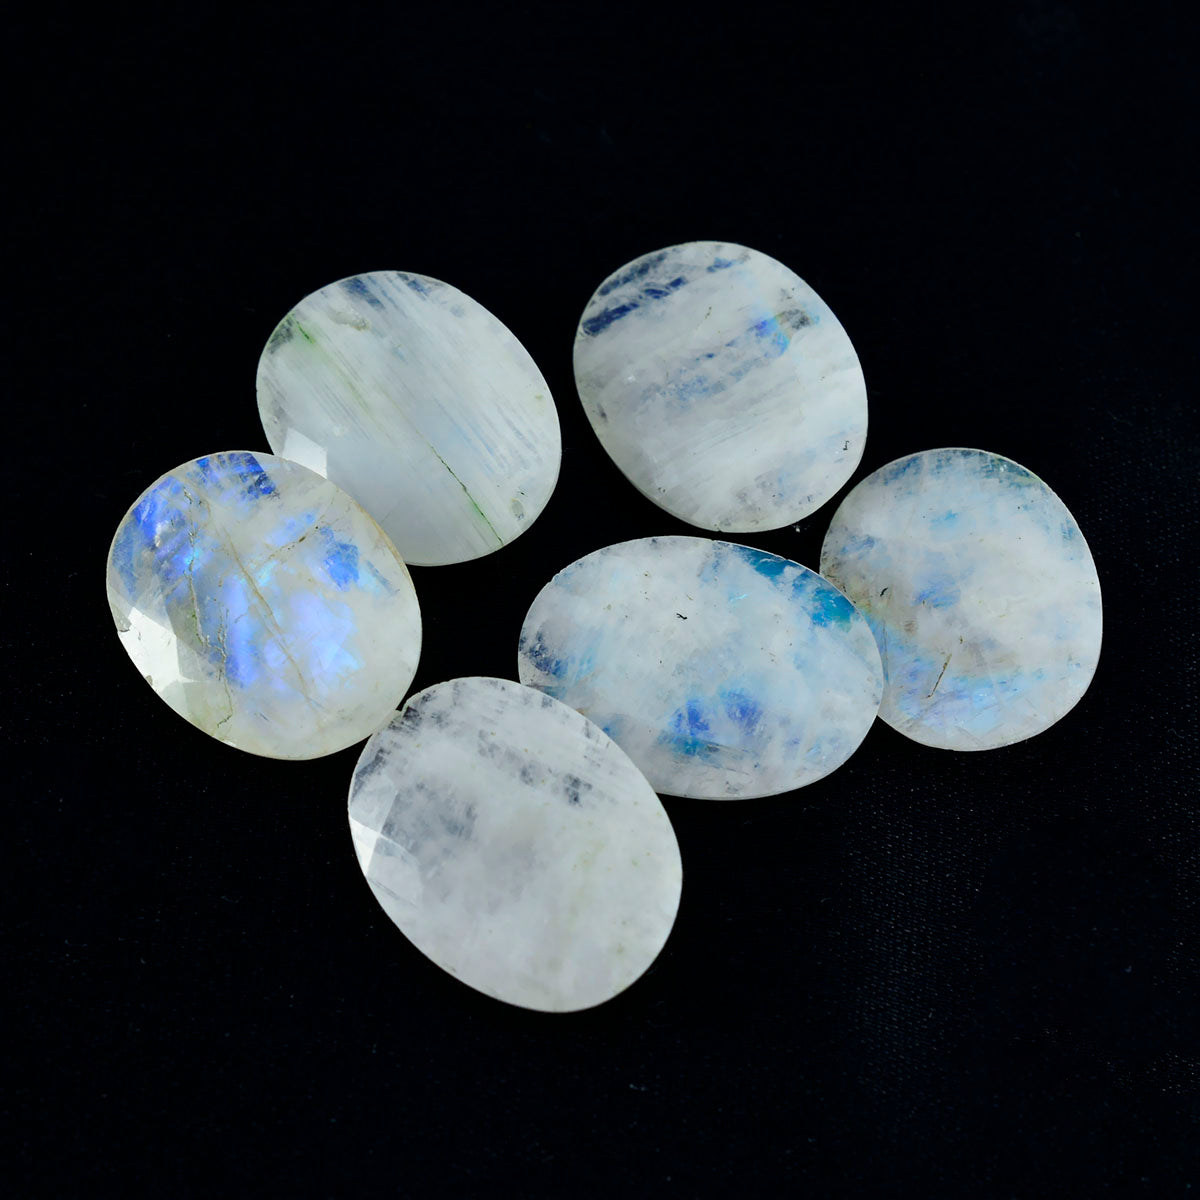 riyogems 1 pezzo di pietra di luna arcobaleno bianca sfaccettata 10x14 mm di forma ovale, gemme sfuse di ottima qualità